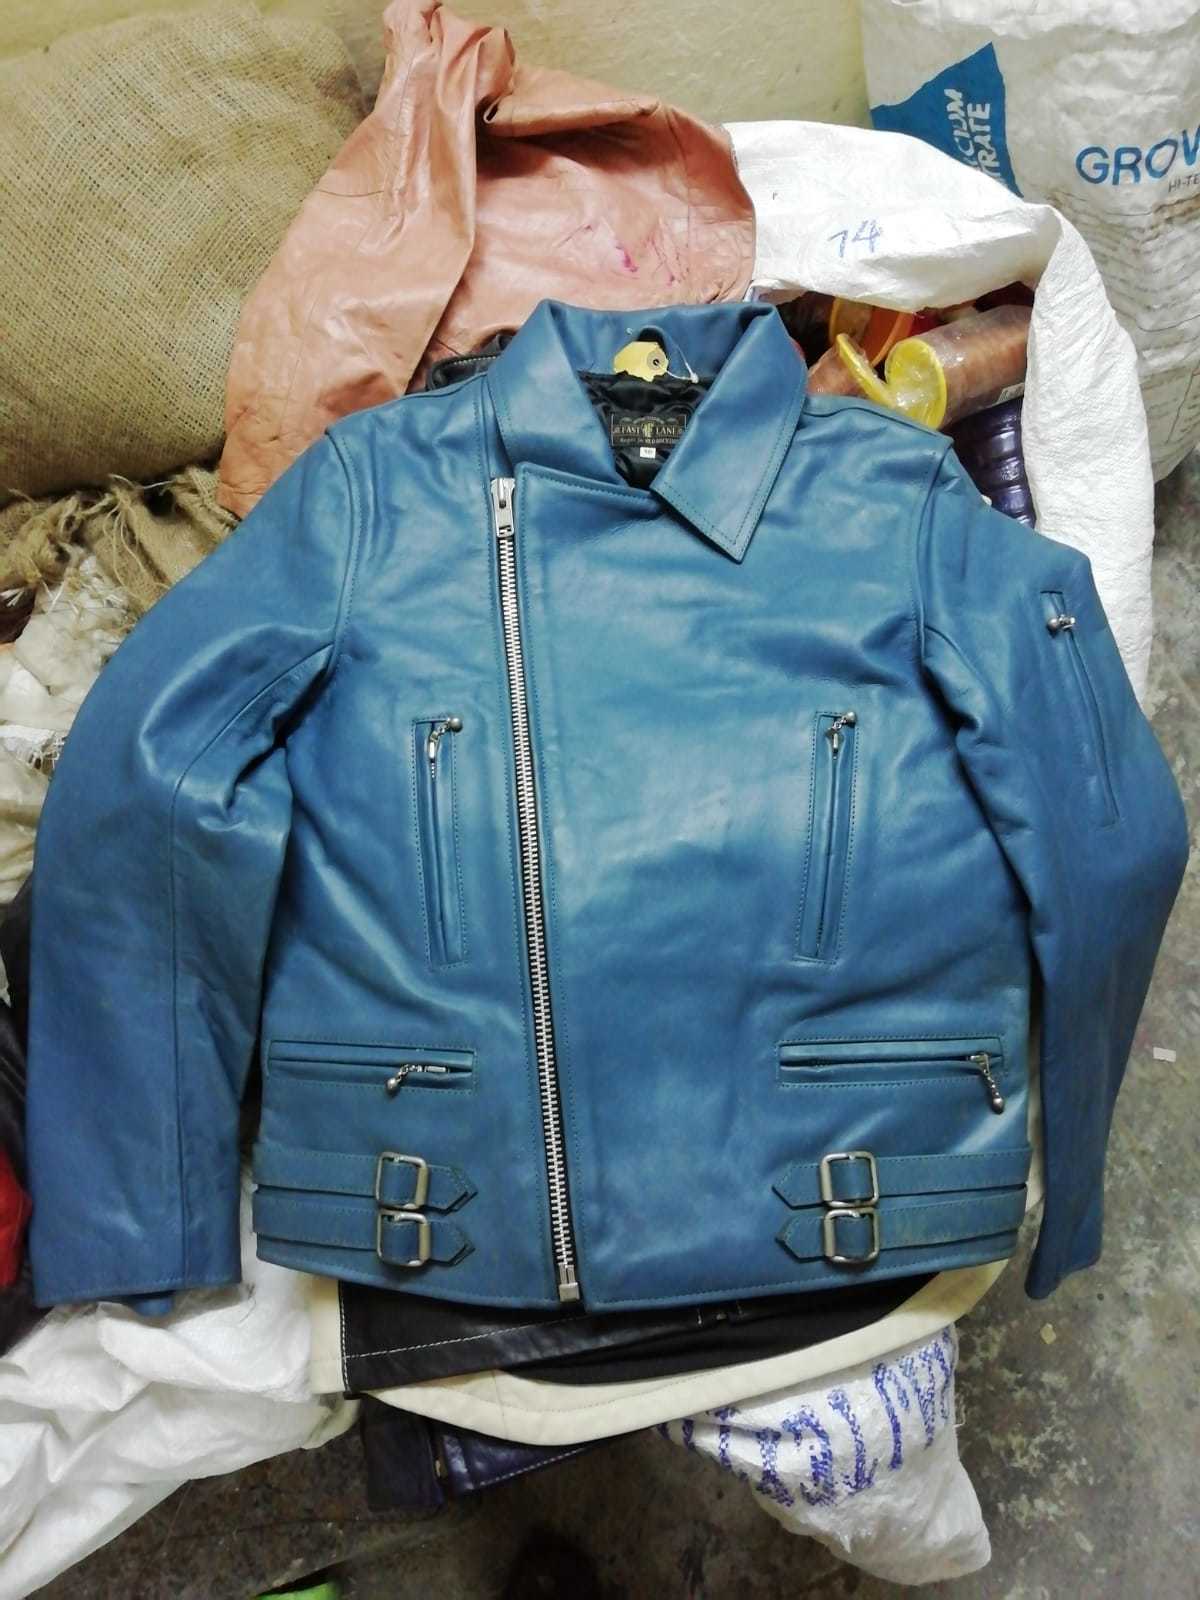 Men Branded Leather Jacket